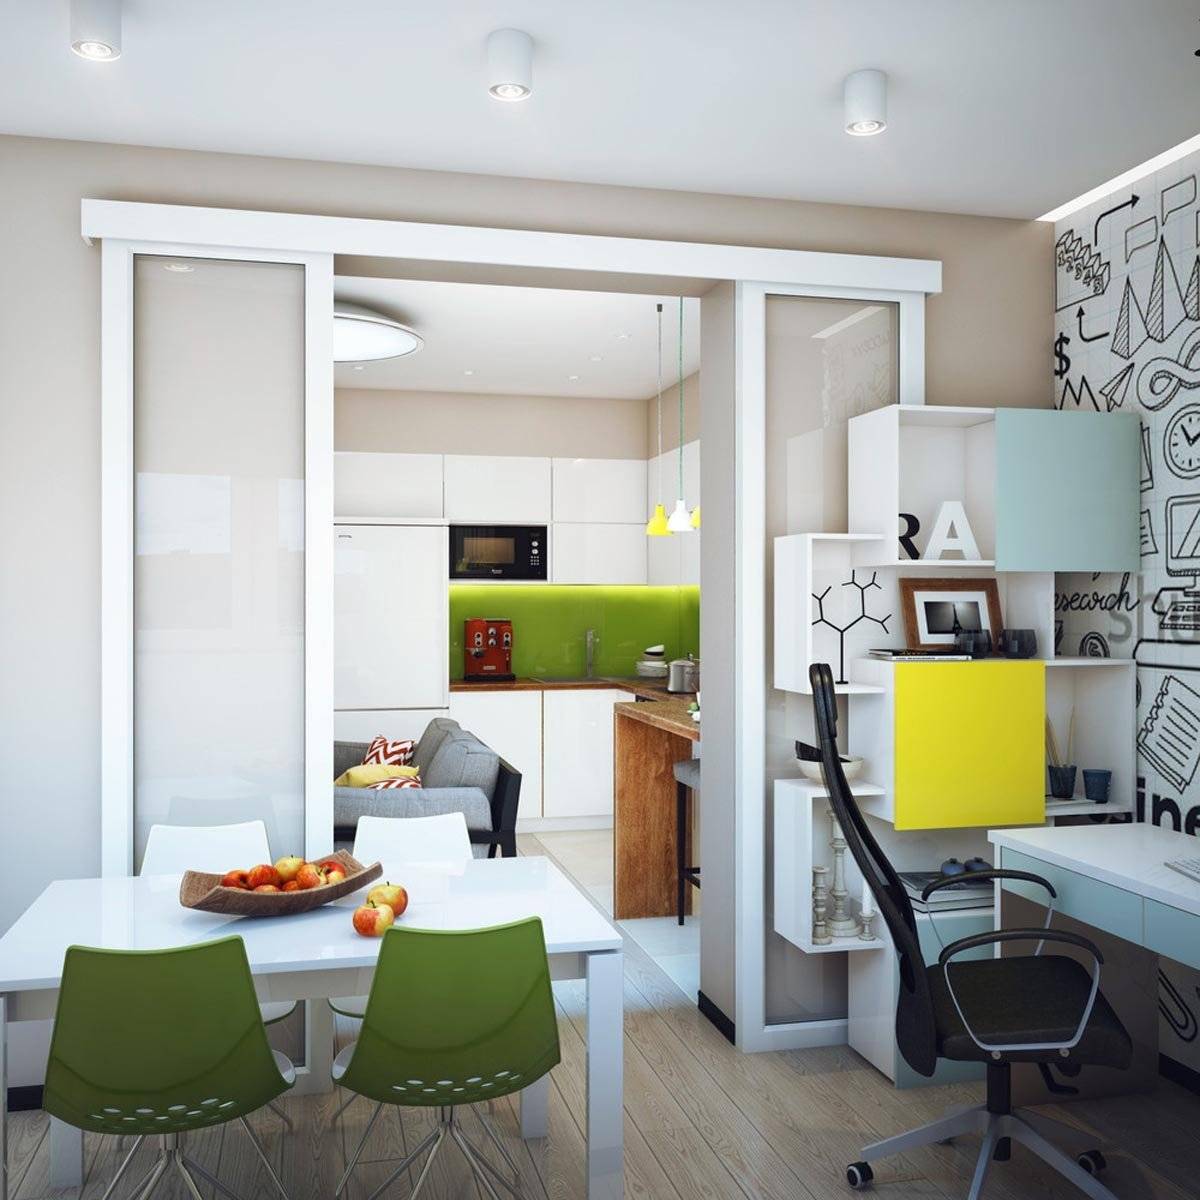 11 идей для дизайна маленьких квартир + фото